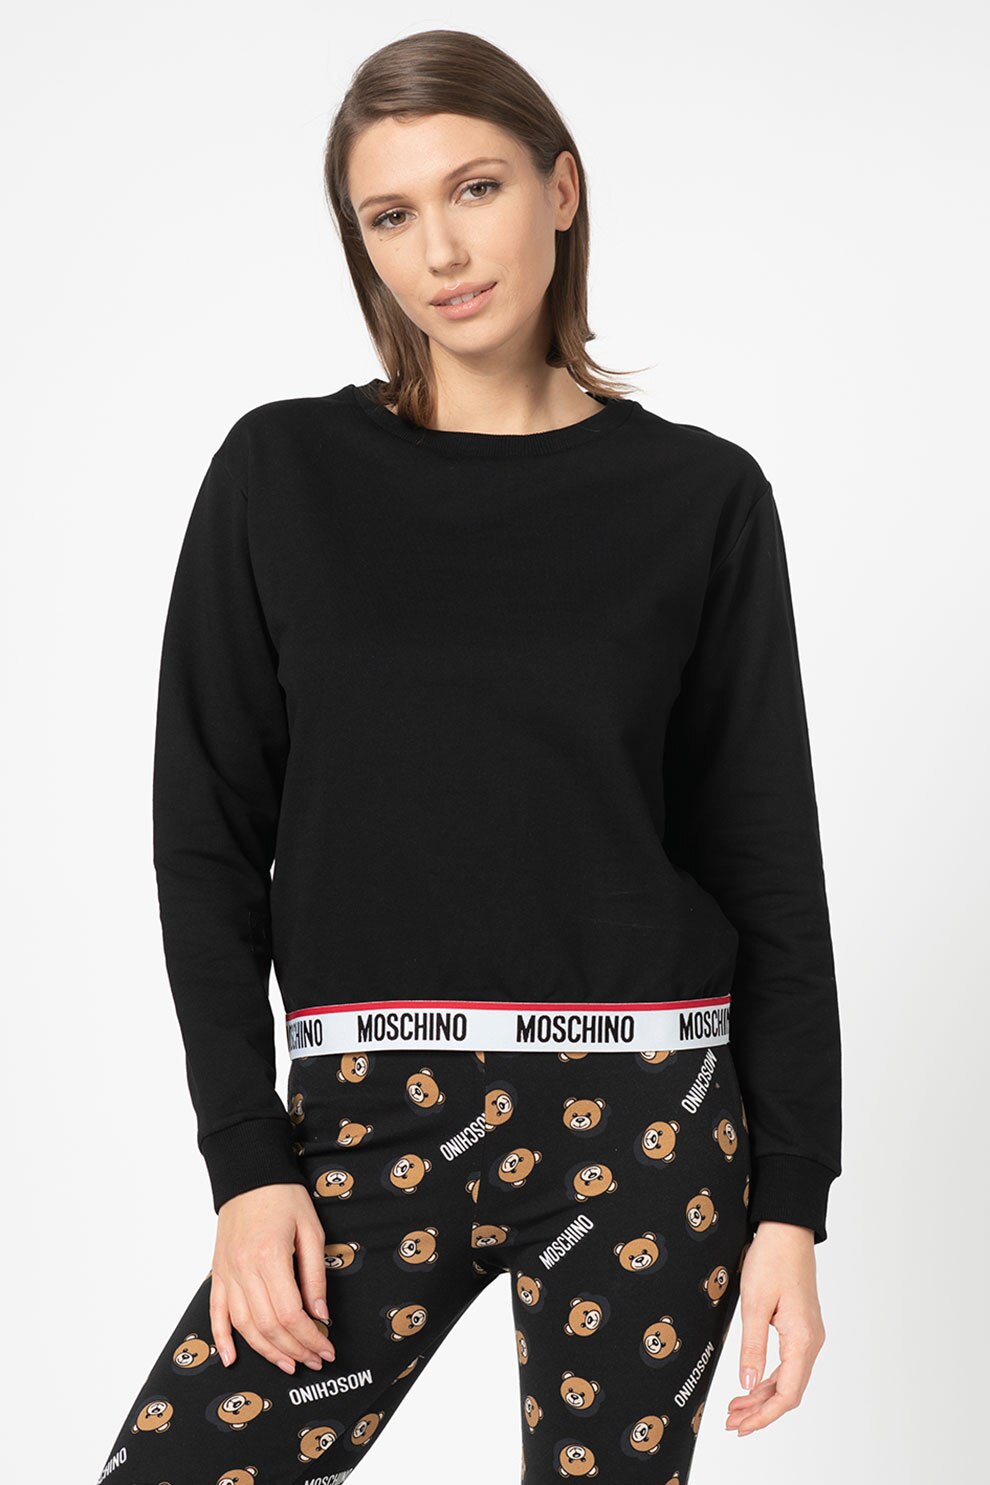 Incentive Abandonment Detector Moschino, Bluza de pijama cu terminatie elastica cu logo, Negru, L - eMAG.ro